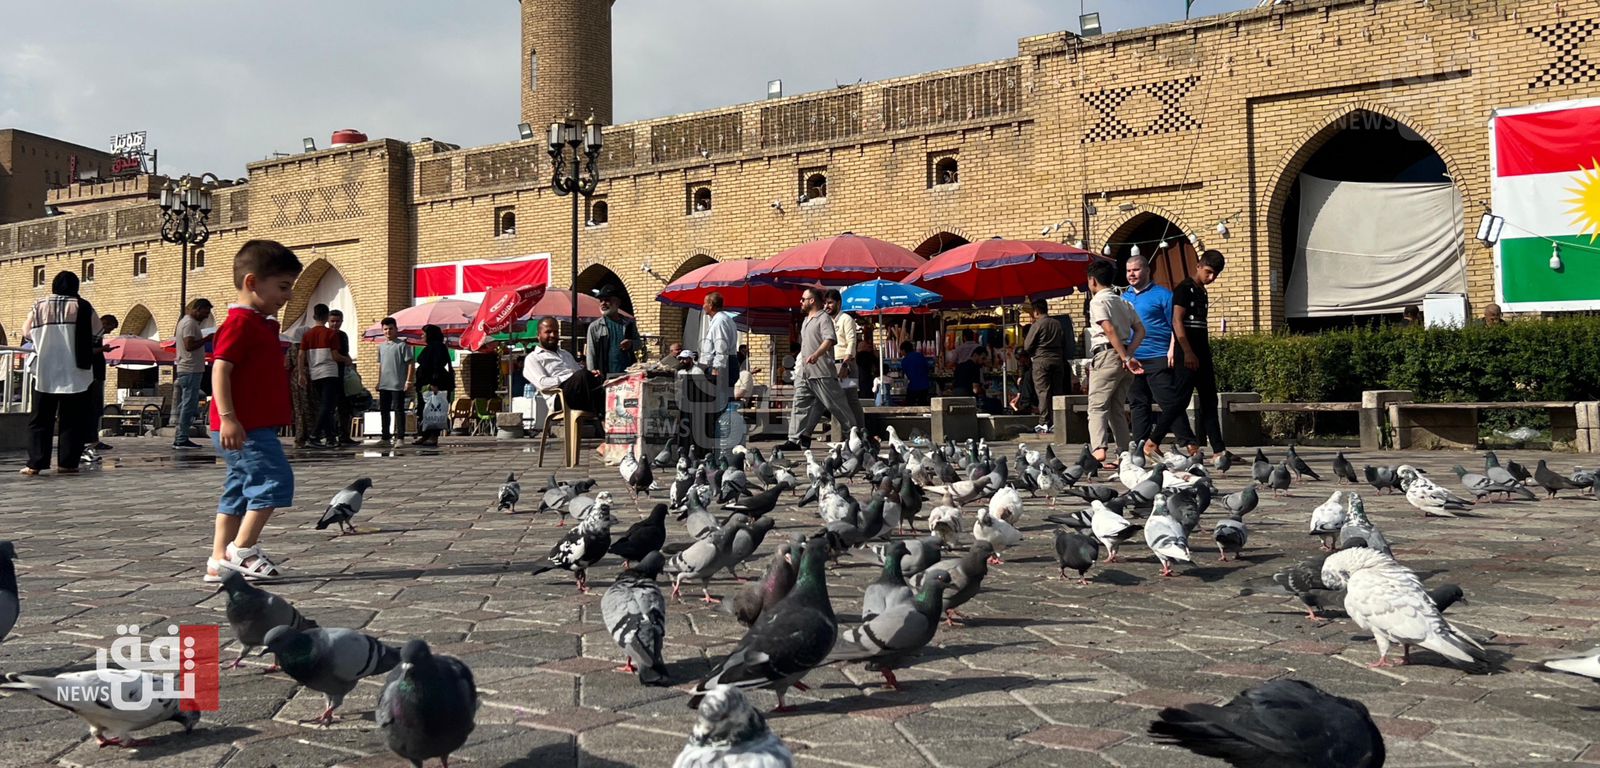 ما يقوله السيّاح عن كوردستان: وجهة العراقيين "المفضلة" وخيار "ممتاز" لدول الجوار (صور)